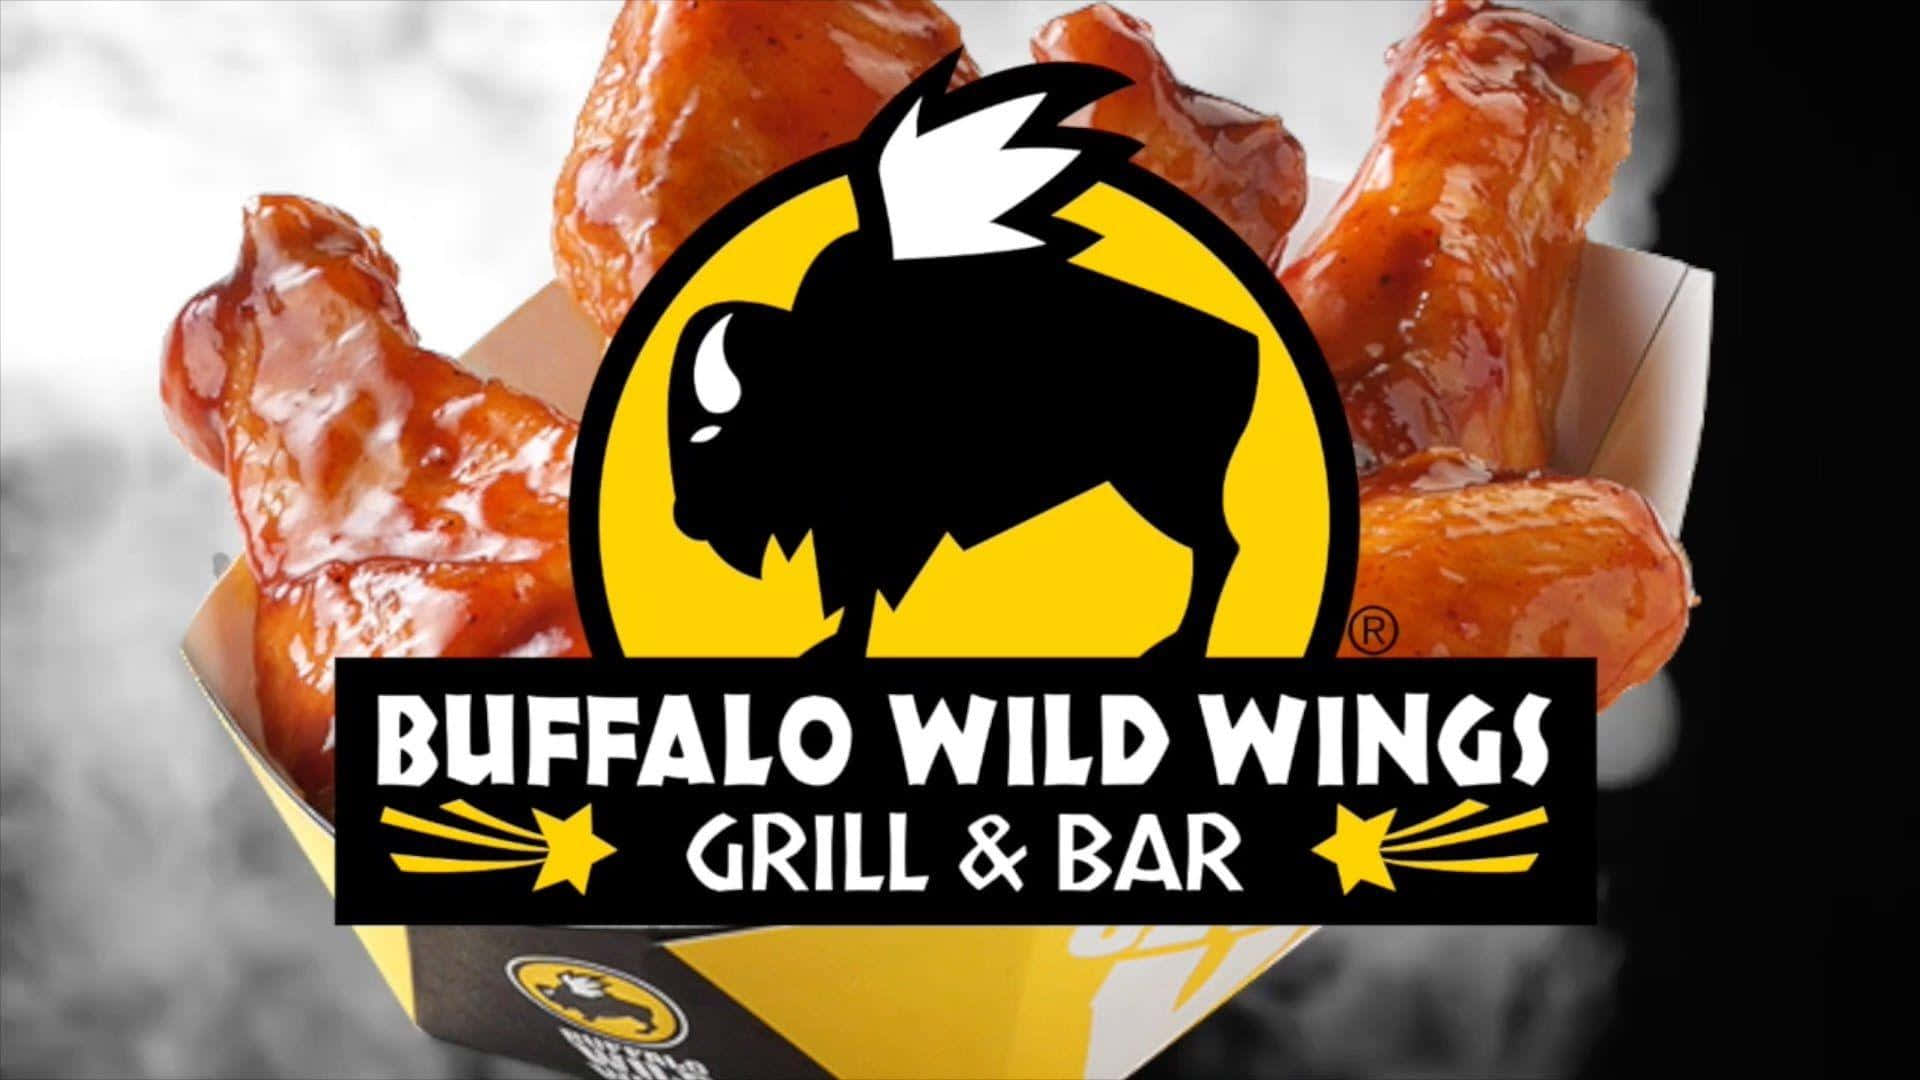 Stillensie Ihren Hunger Mit Köstlichen Traditionellen Und Knochenlosen Wings Von Buffalo Wild Wings.